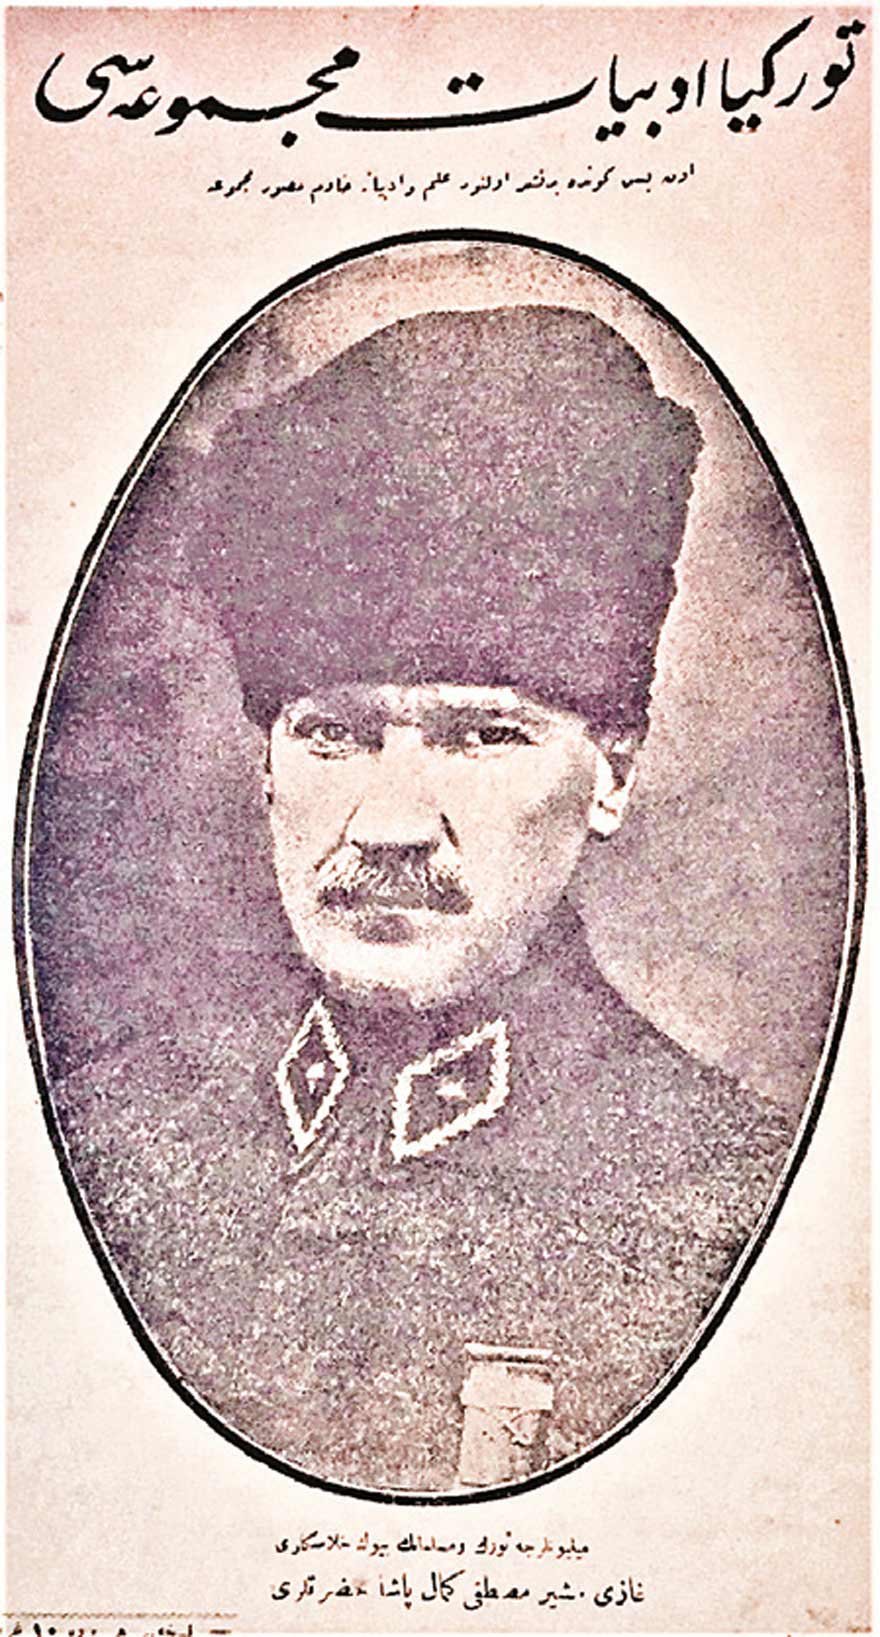 Türkiye Edebiyat Mecmuası, 1 Eylül 1923, Resim altında, ‘Milyonarca Türk ve Müslüman’ın büyük halaskarı (kurtarıcısı) Gazi Müşir Mustafa Kemal Paşa Hazretleri’ yazıyor.